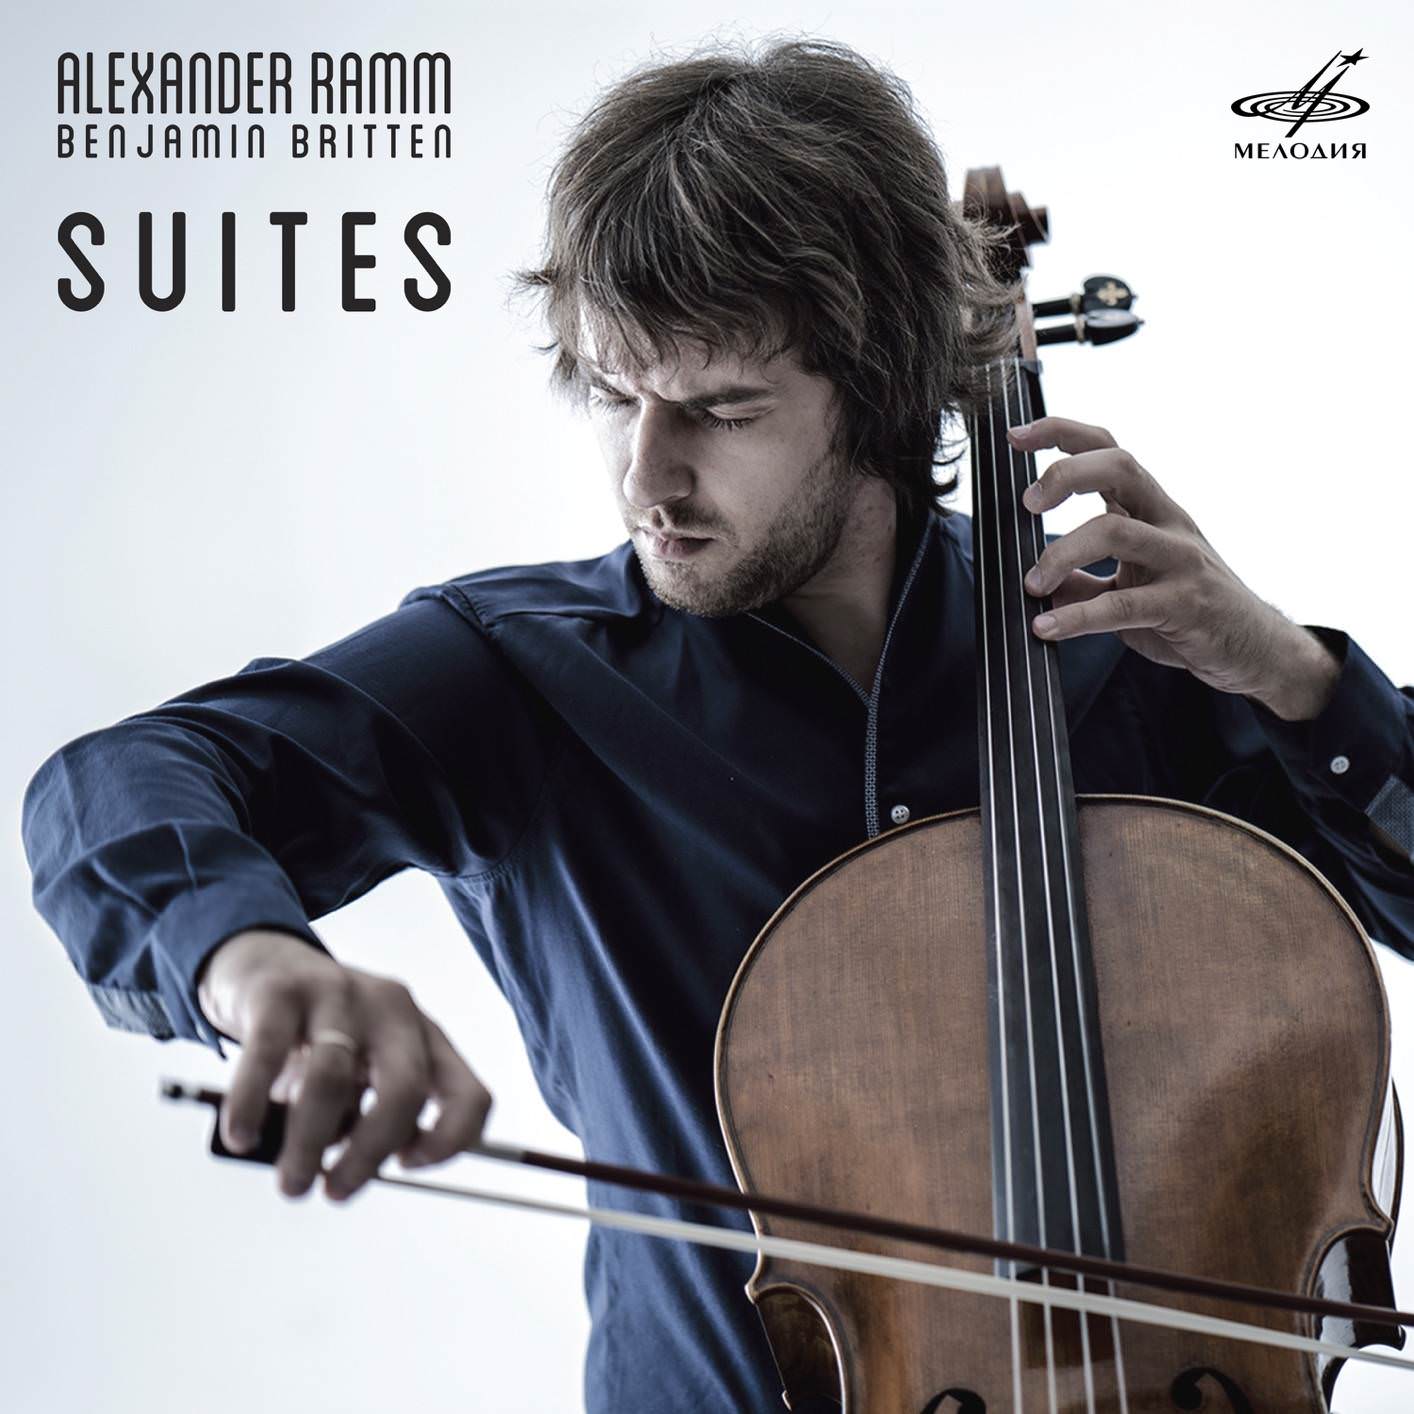 Alexander Ramm – Britten: Cello Suites (2018) [FLAC 24bit/96kHz]